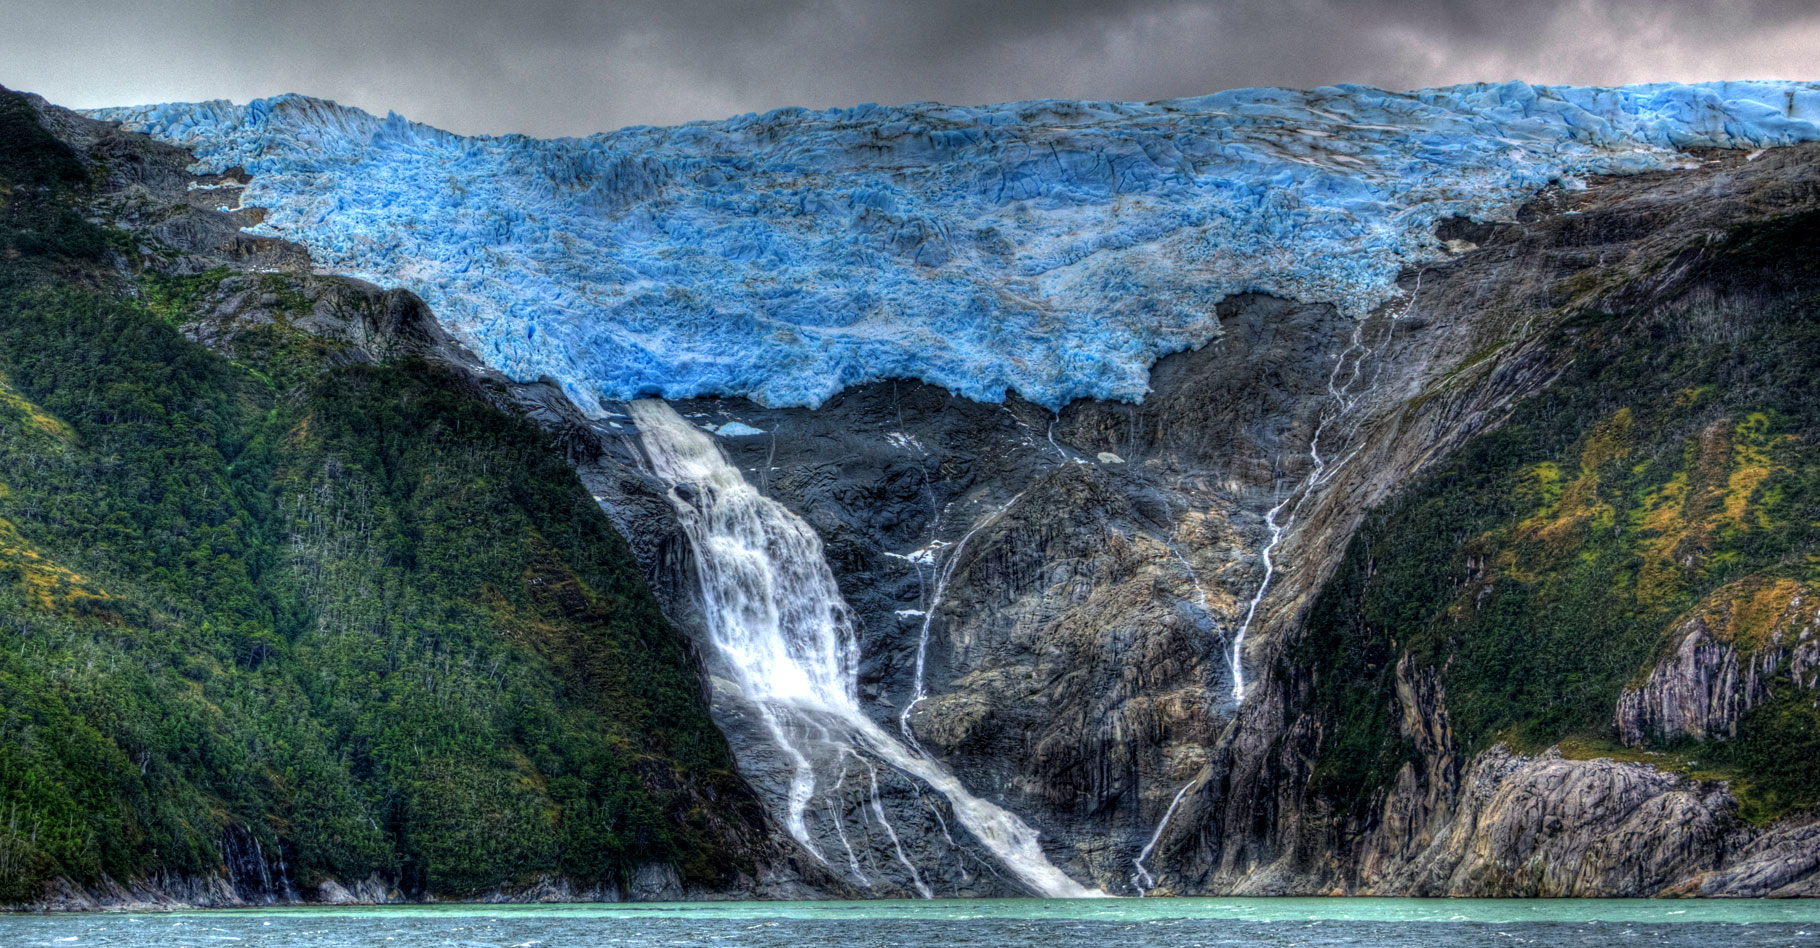 Le glacier Romanche de la&nbsp;cordillère Darwin situé dans le Parc National Alberto&nbsp;Chili.&nbsp;© Vin on the move - CC BY-NC 2.0